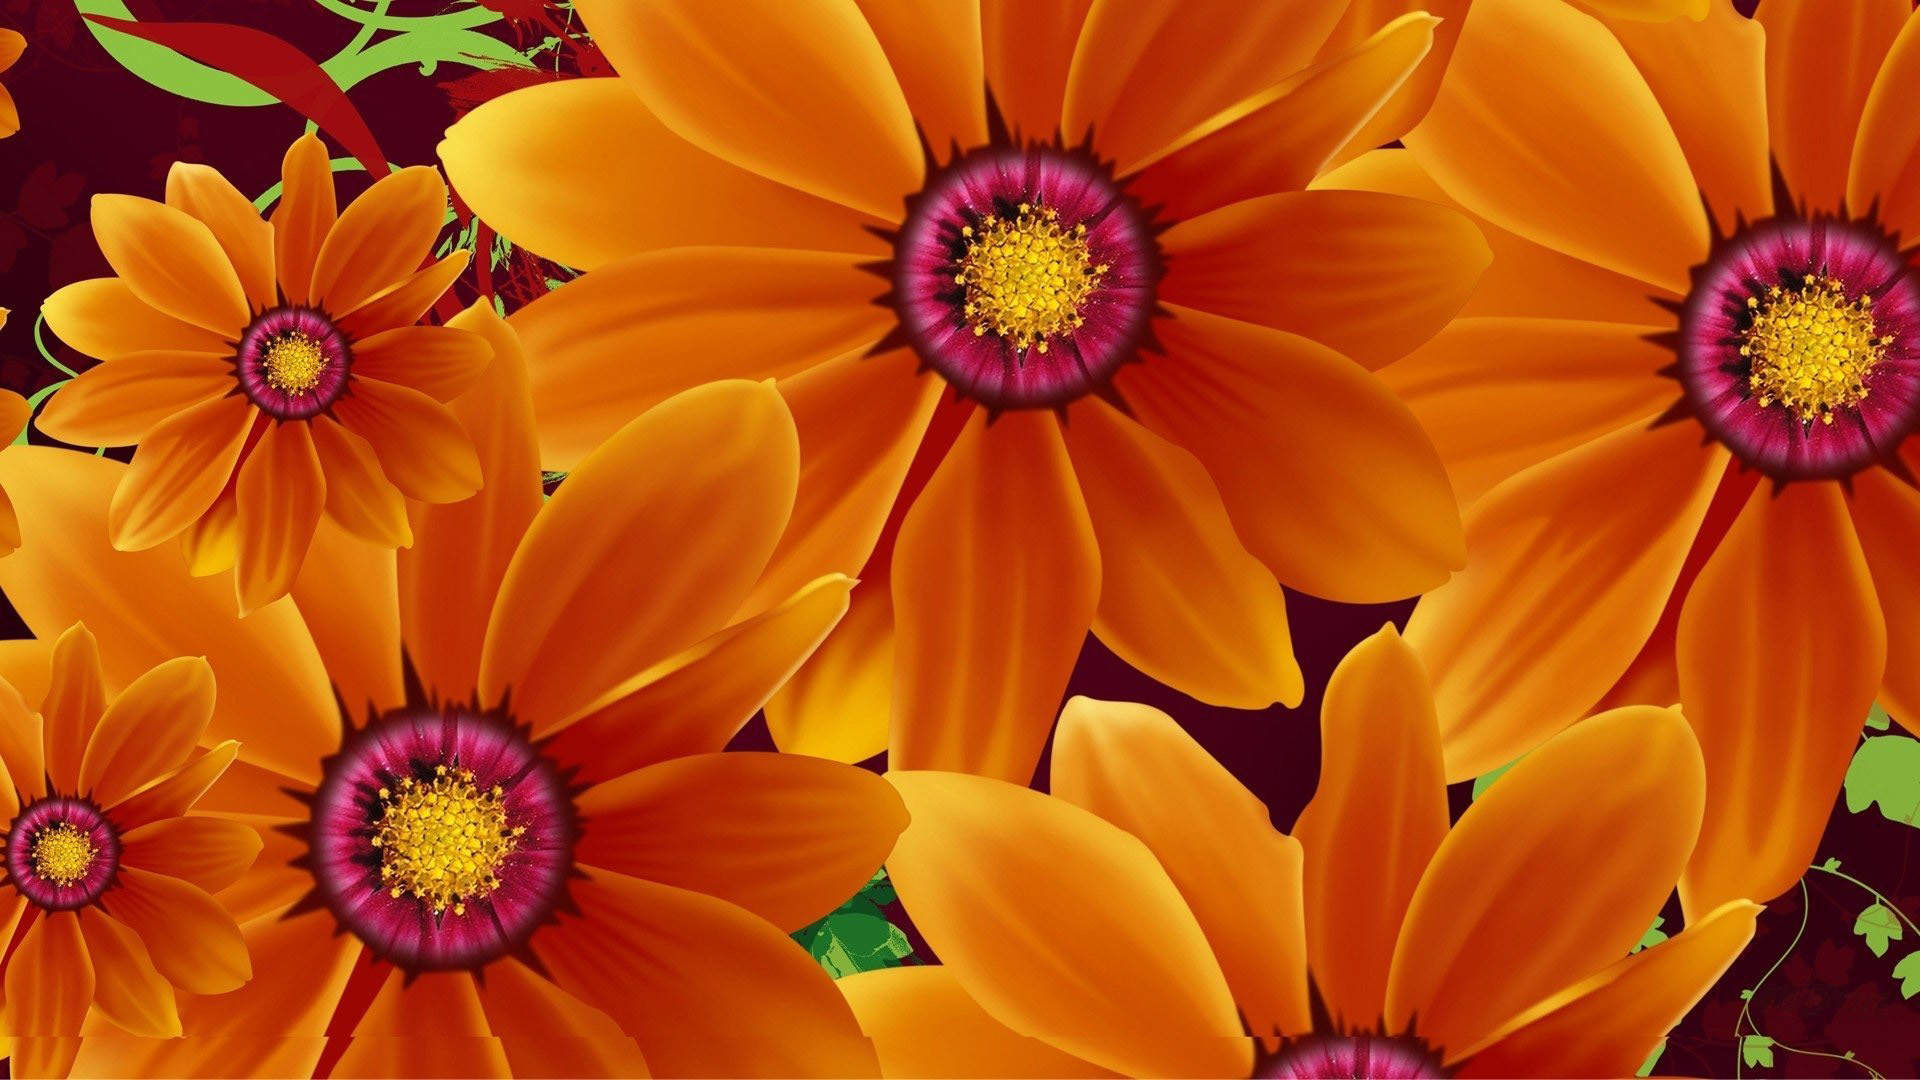 hd wallpaper für handy 1920x1080 herunterladen,blume,blütenblatt,orange,afrikanisches gänseblümchen,gelb